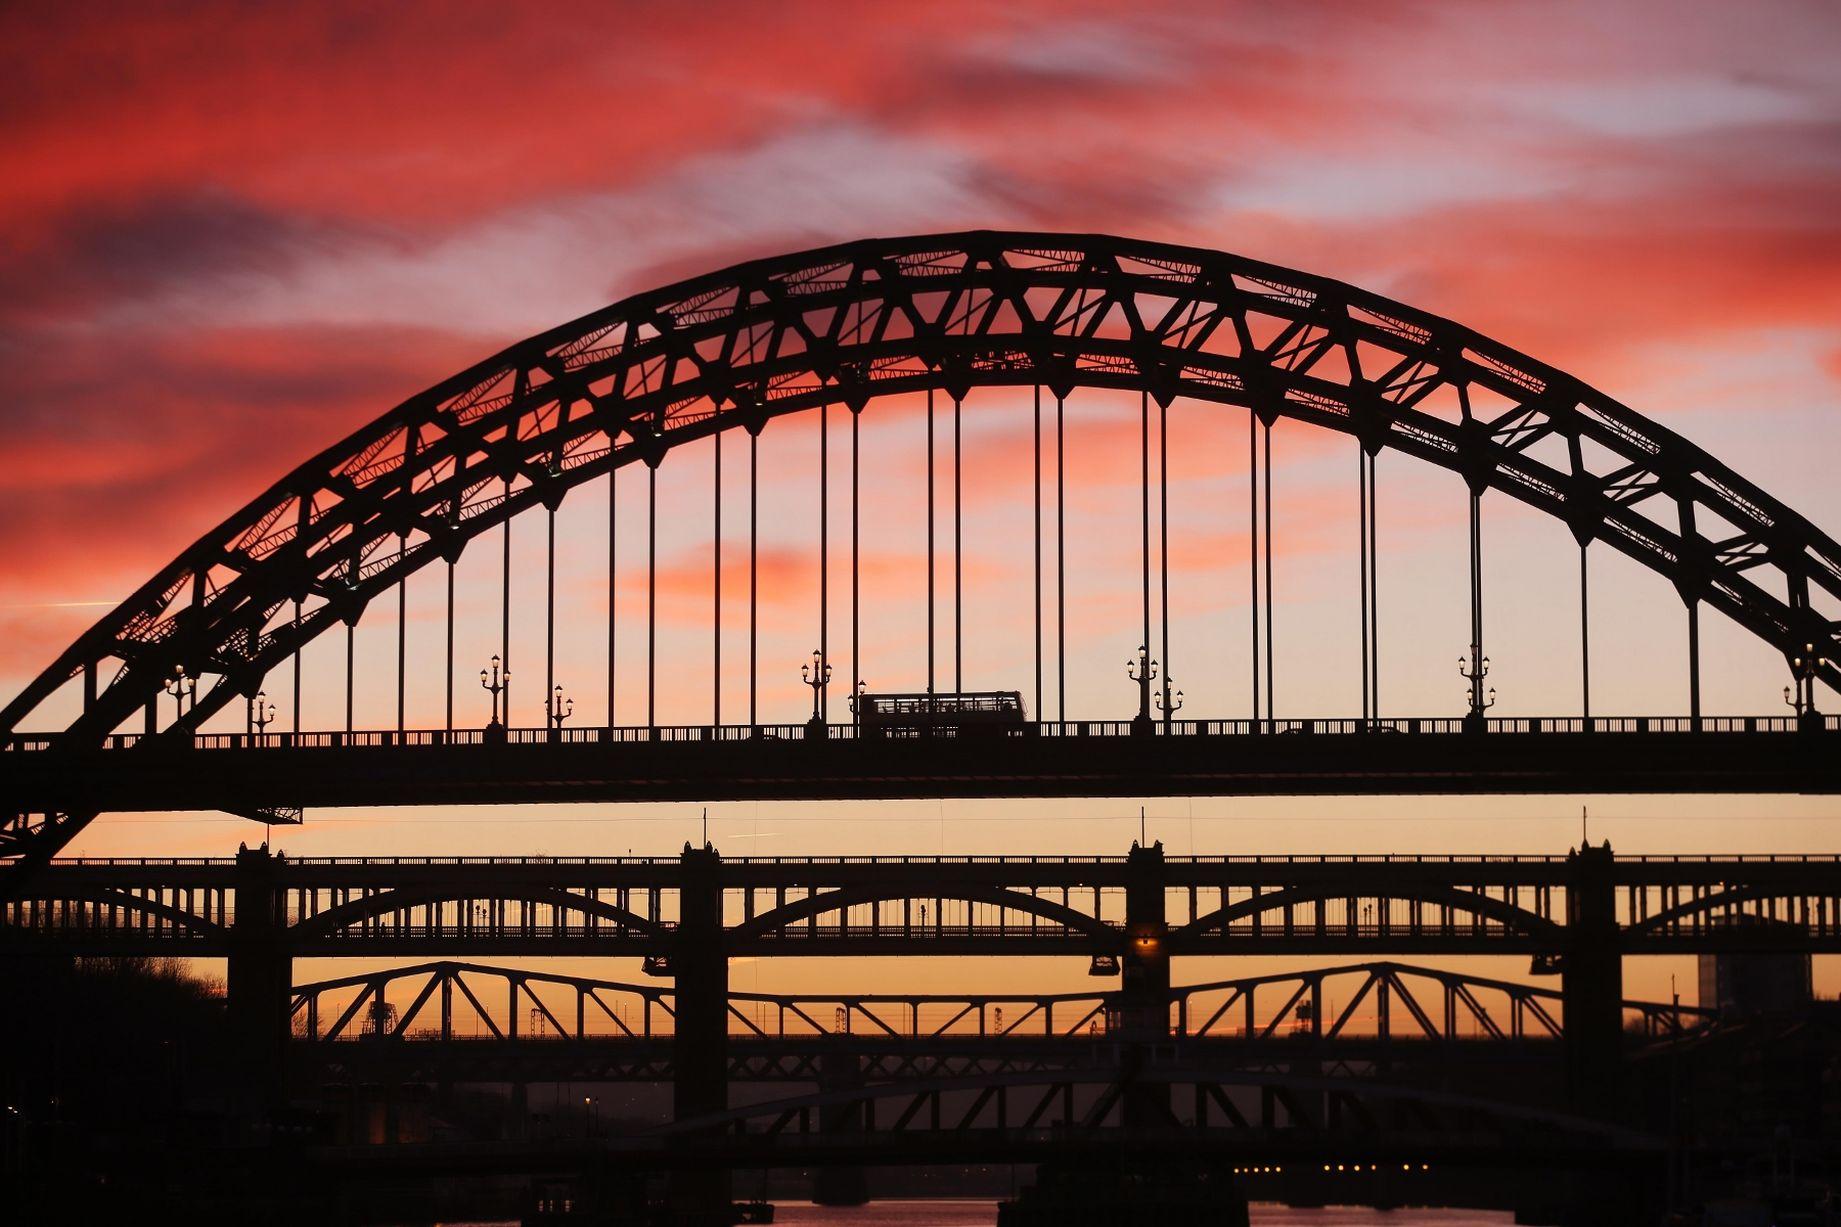 fabulous image of Newcastle's Tyne Bridge